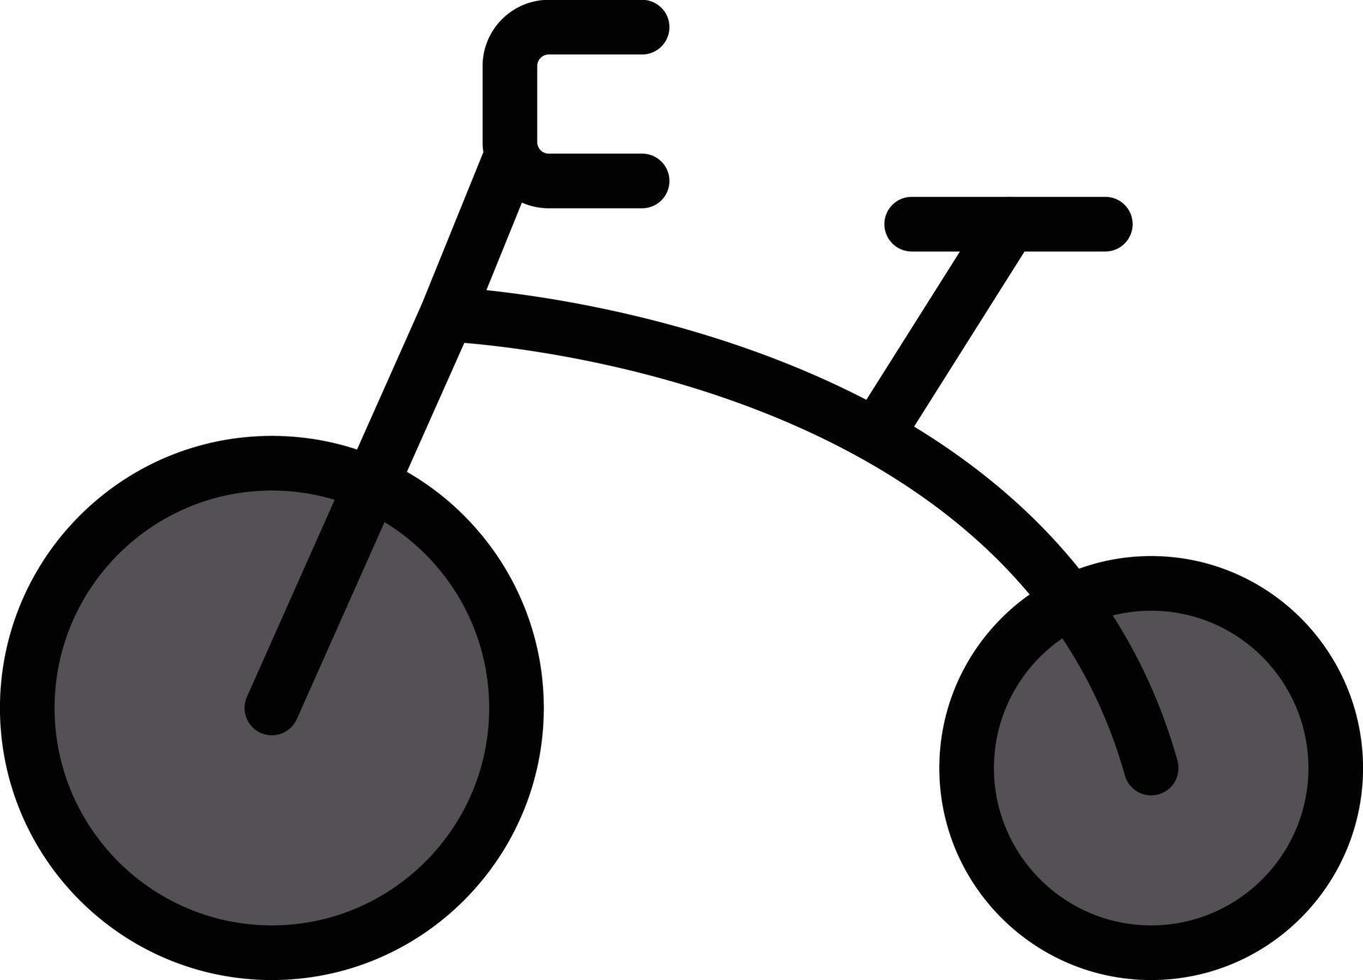 cykel vektor illustration på en bakgrund. premium kvalitet symbols.vector ikoner för koncept och grafisk design.